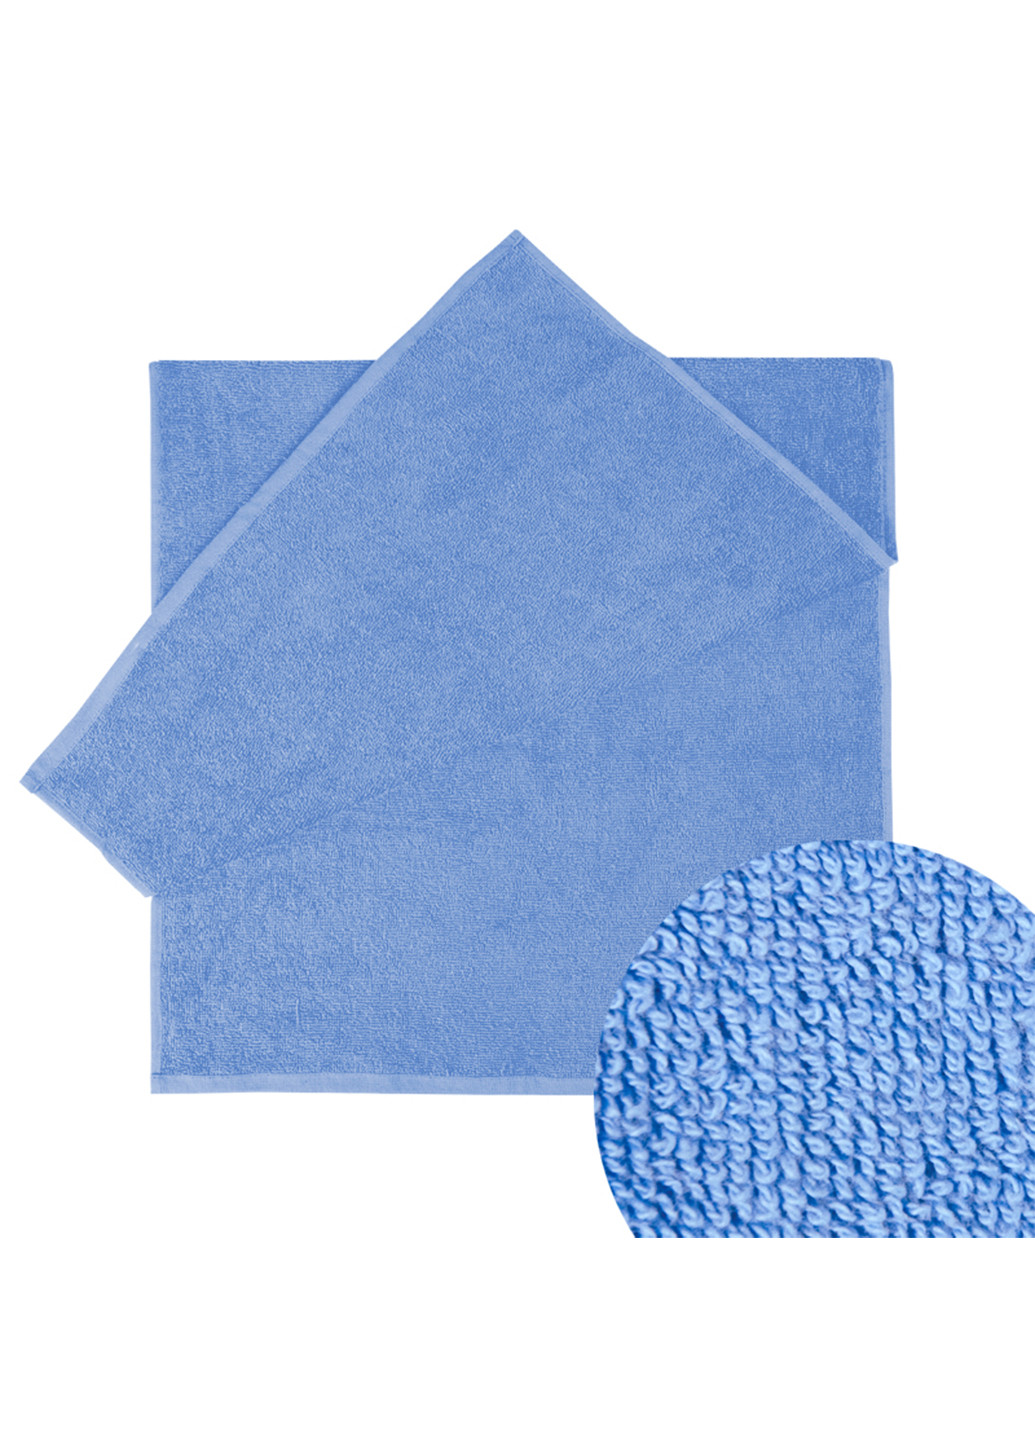 Ярослав полотенце яр-400 махровое 100х150 однотонный темно-голубой производство - Украина